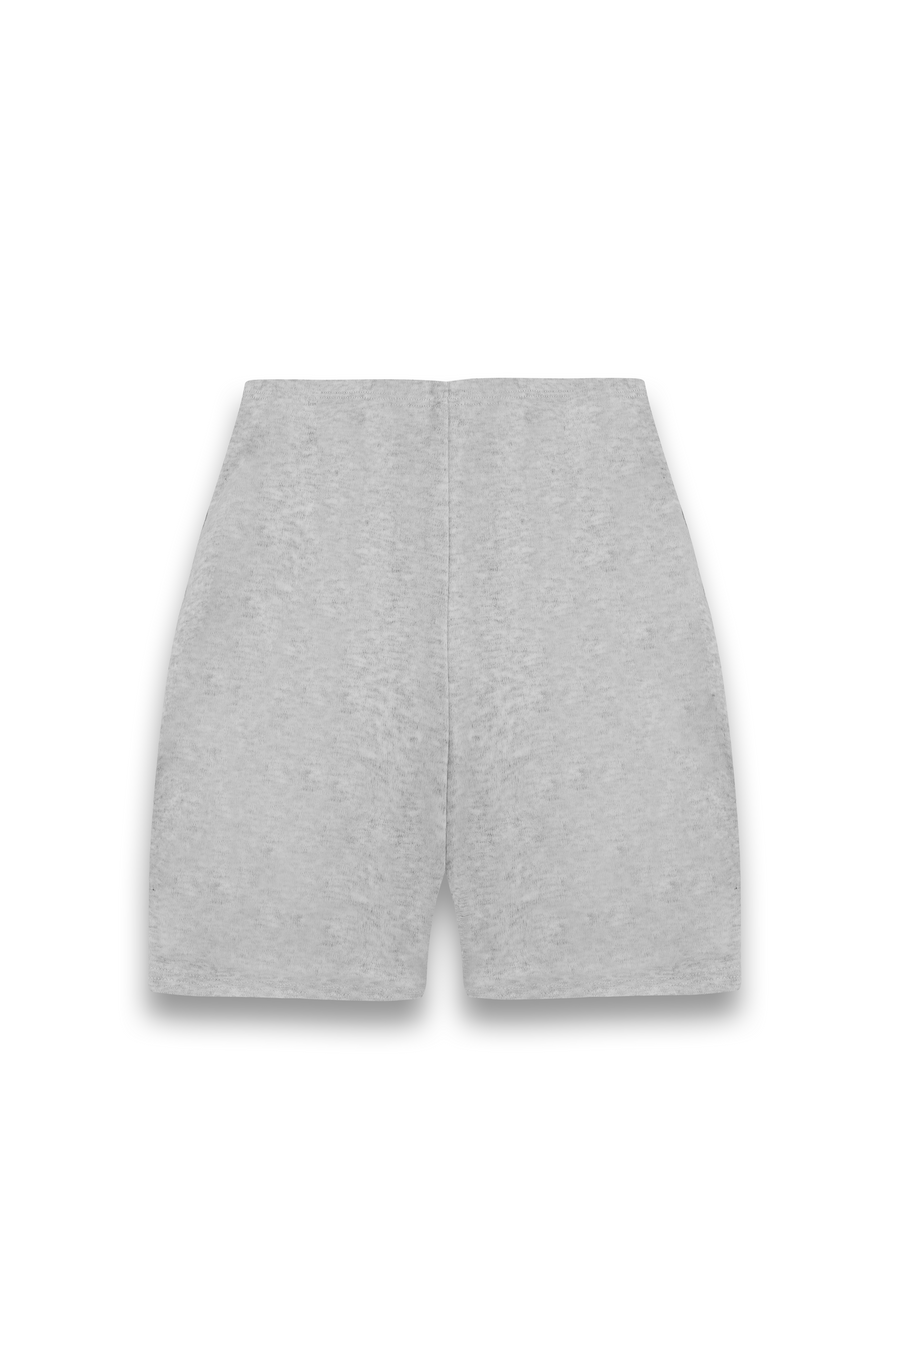 YOGA Stretch Shorts in Grey Marl – SistersandSeekers